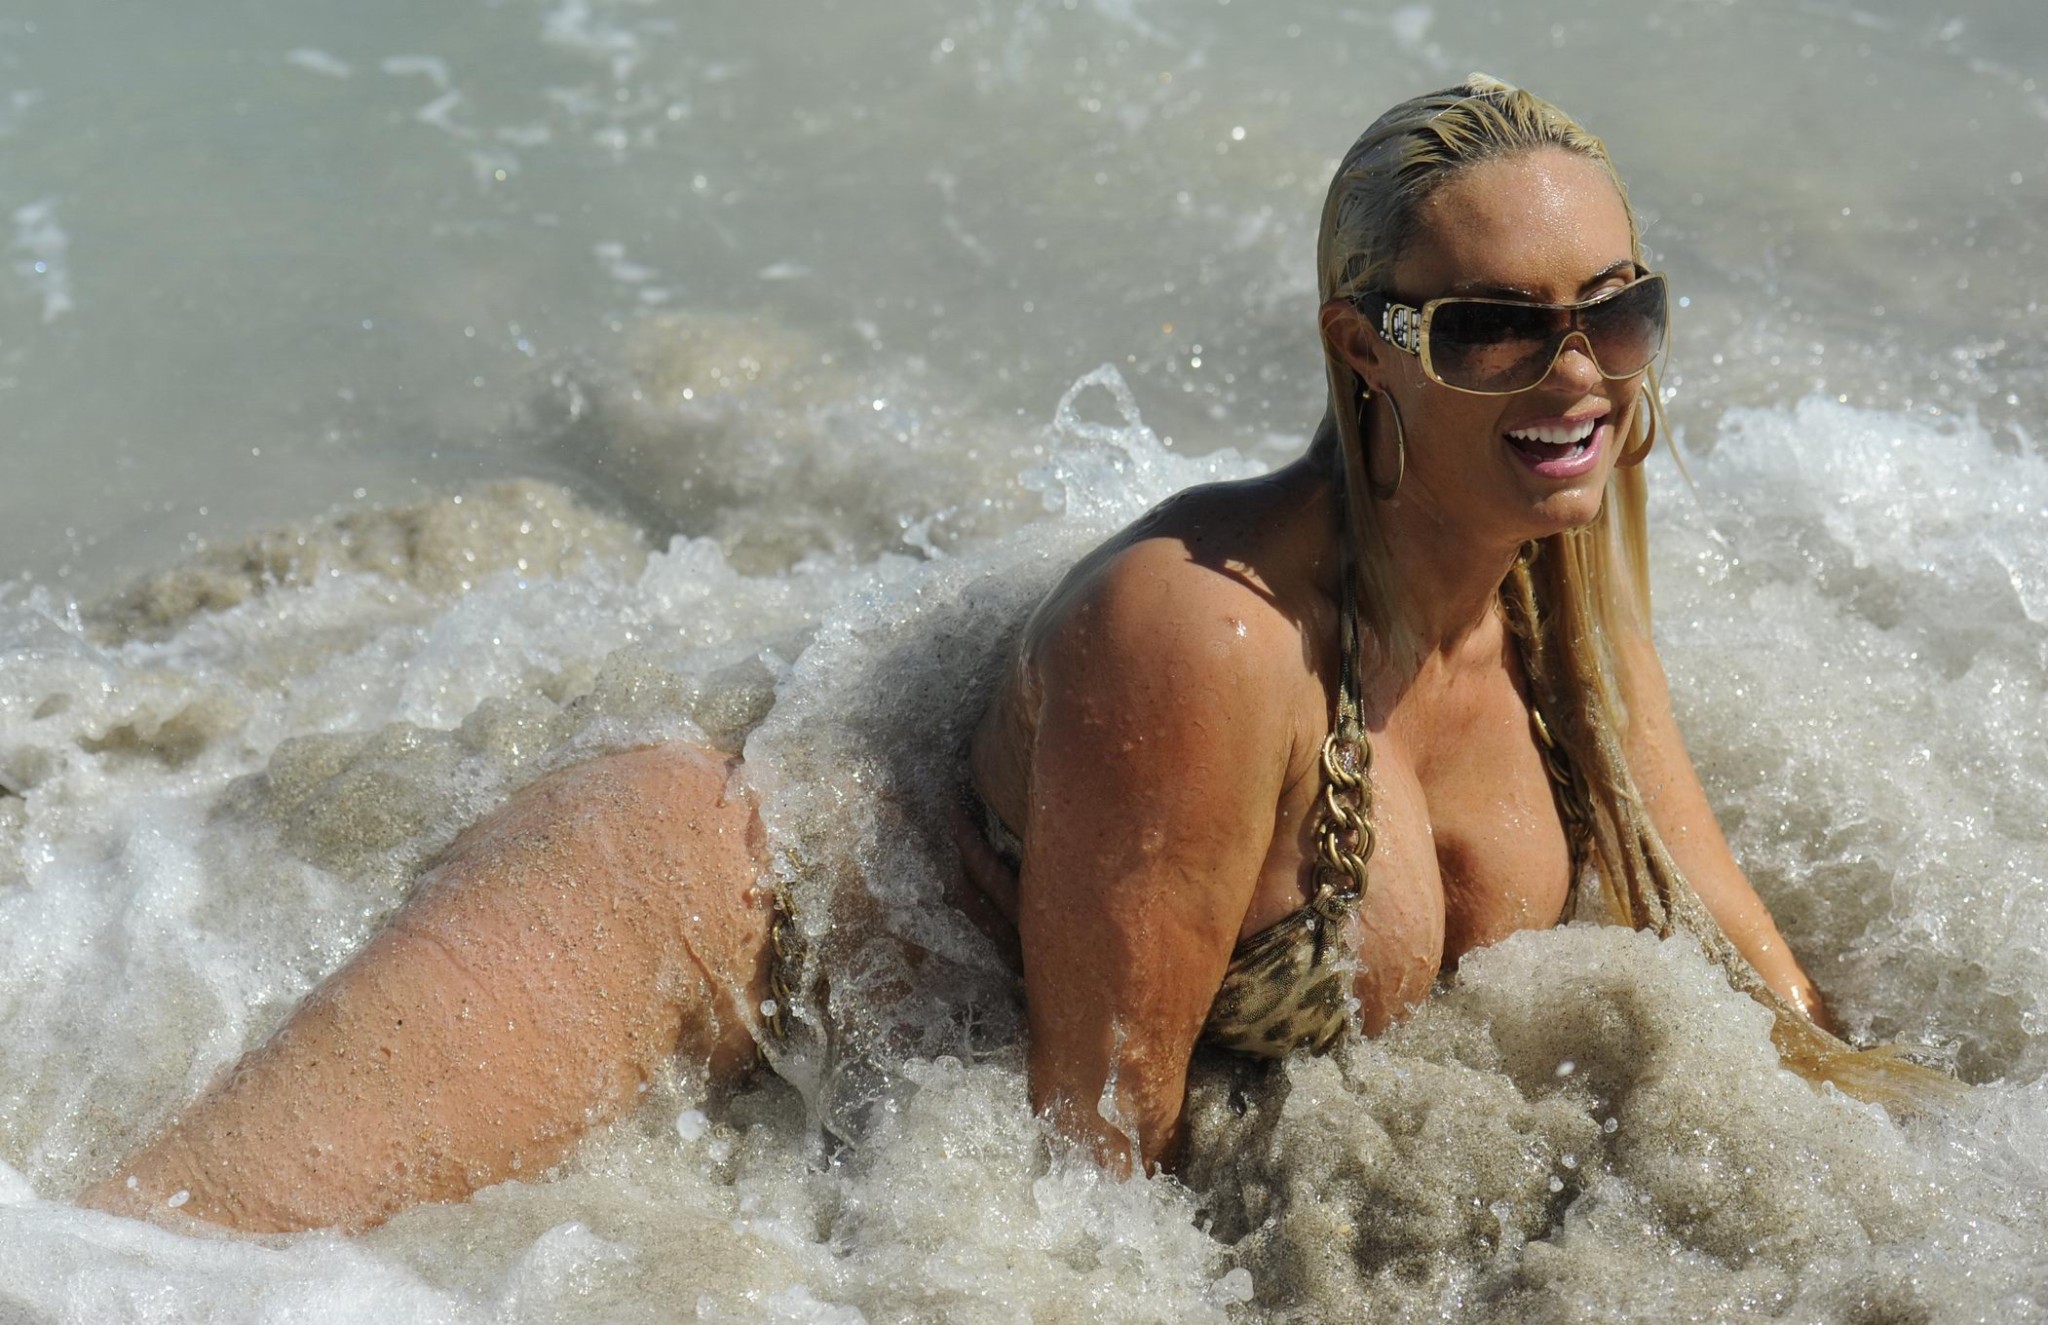 Nicole coco austin con bikini de leopardo en la playa de miami
 #75283476